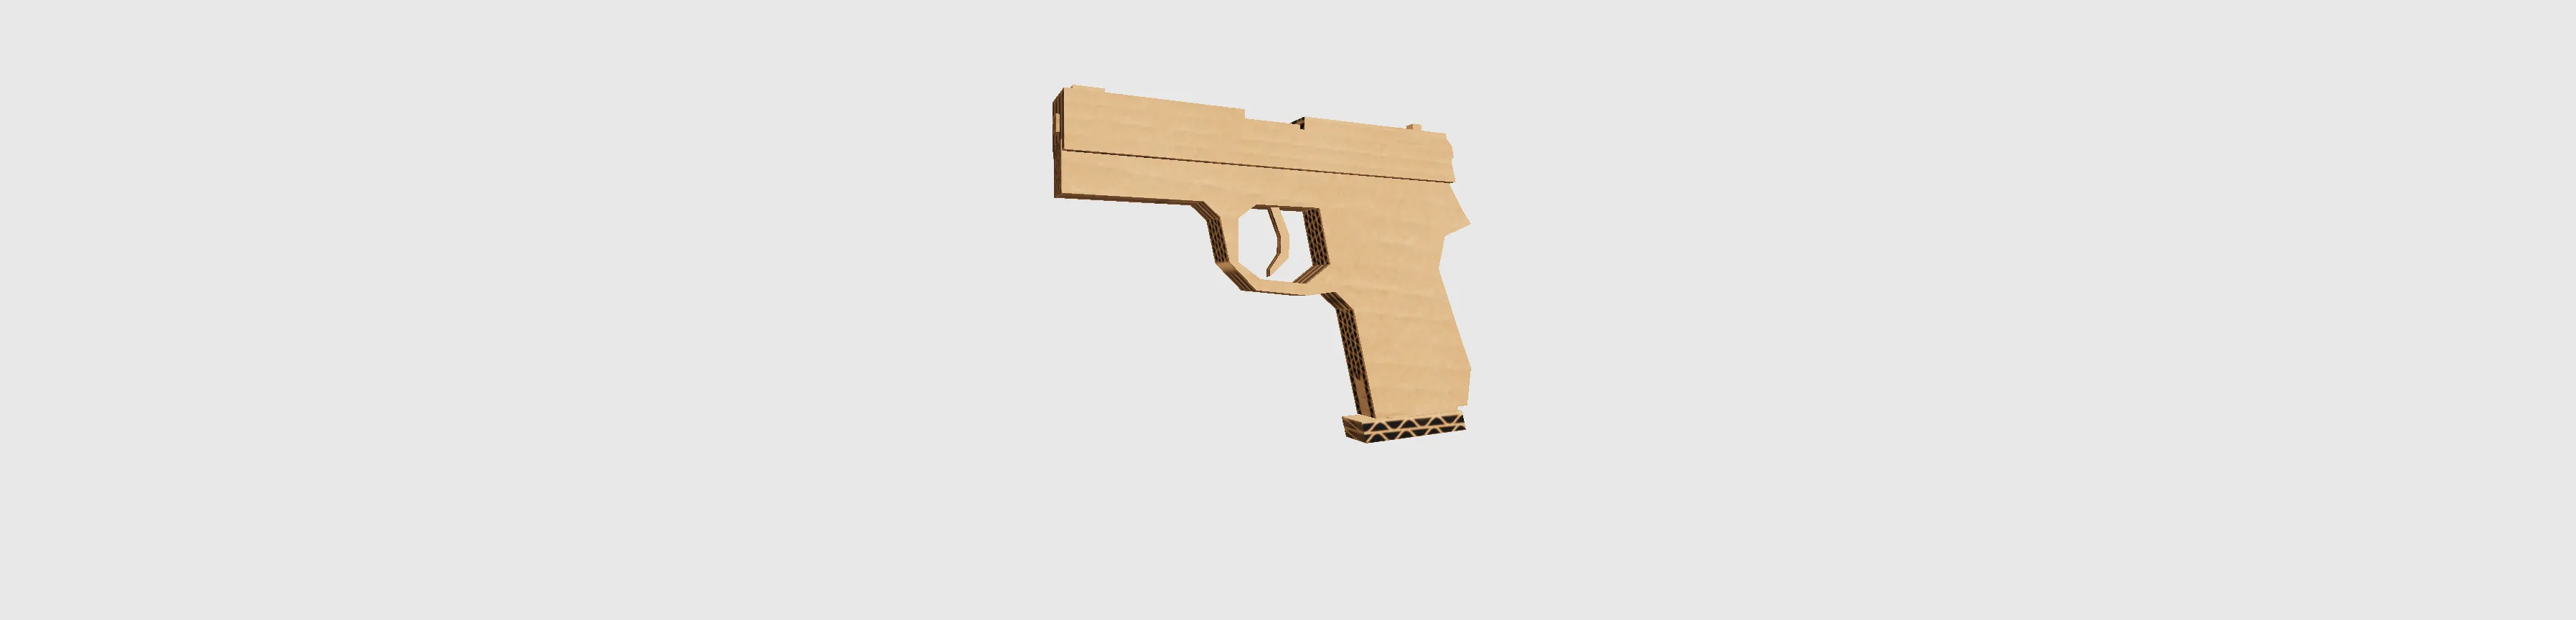 cardboard gun